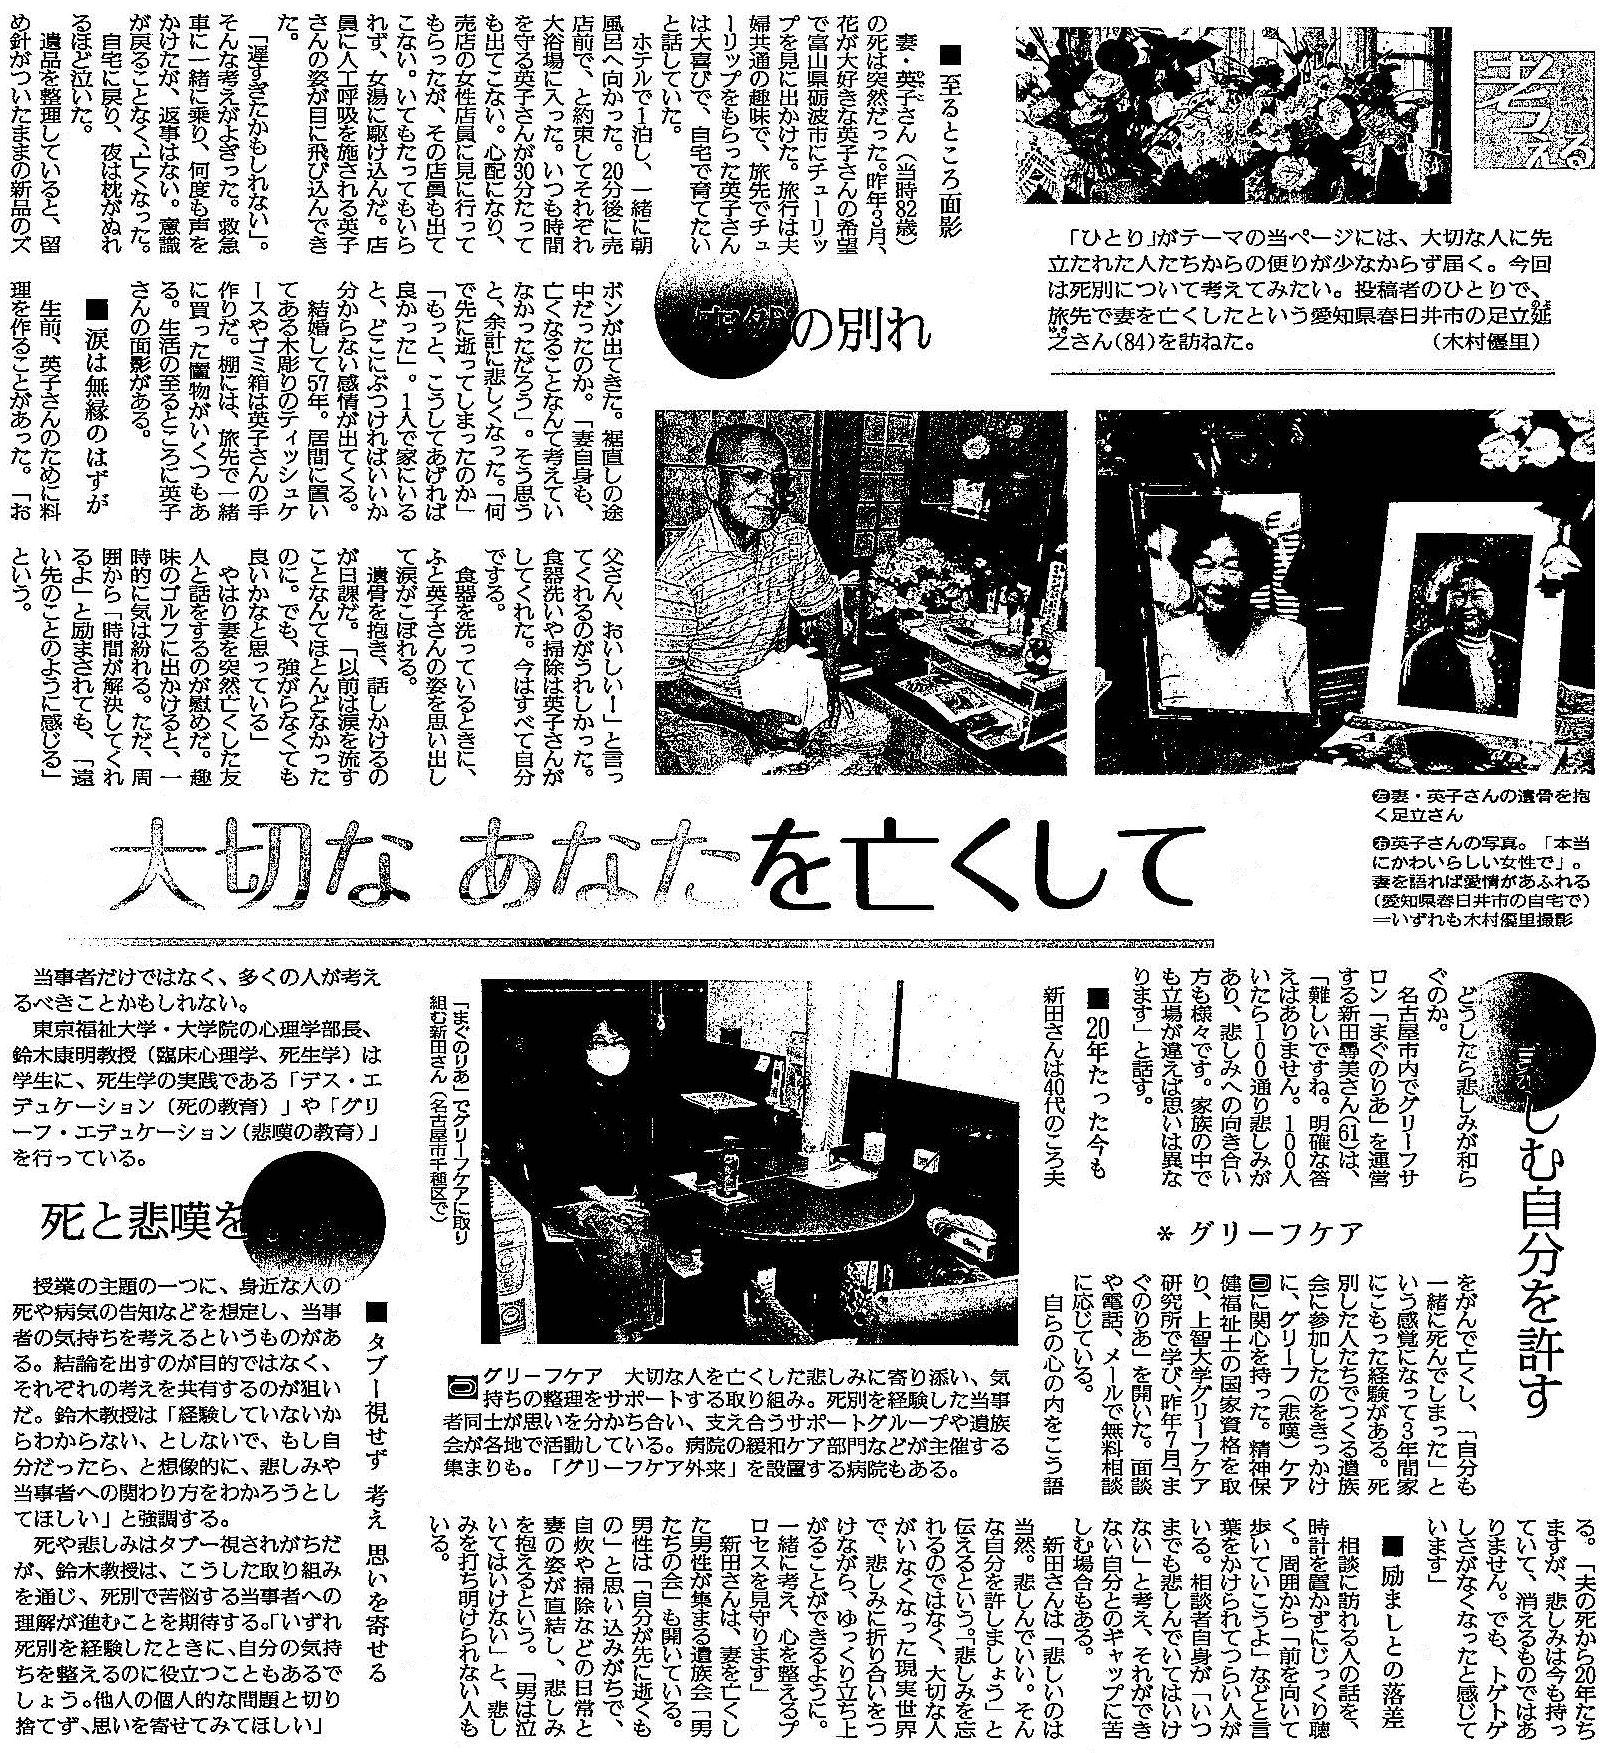 読売新聞 2021年11月28日掲載記事